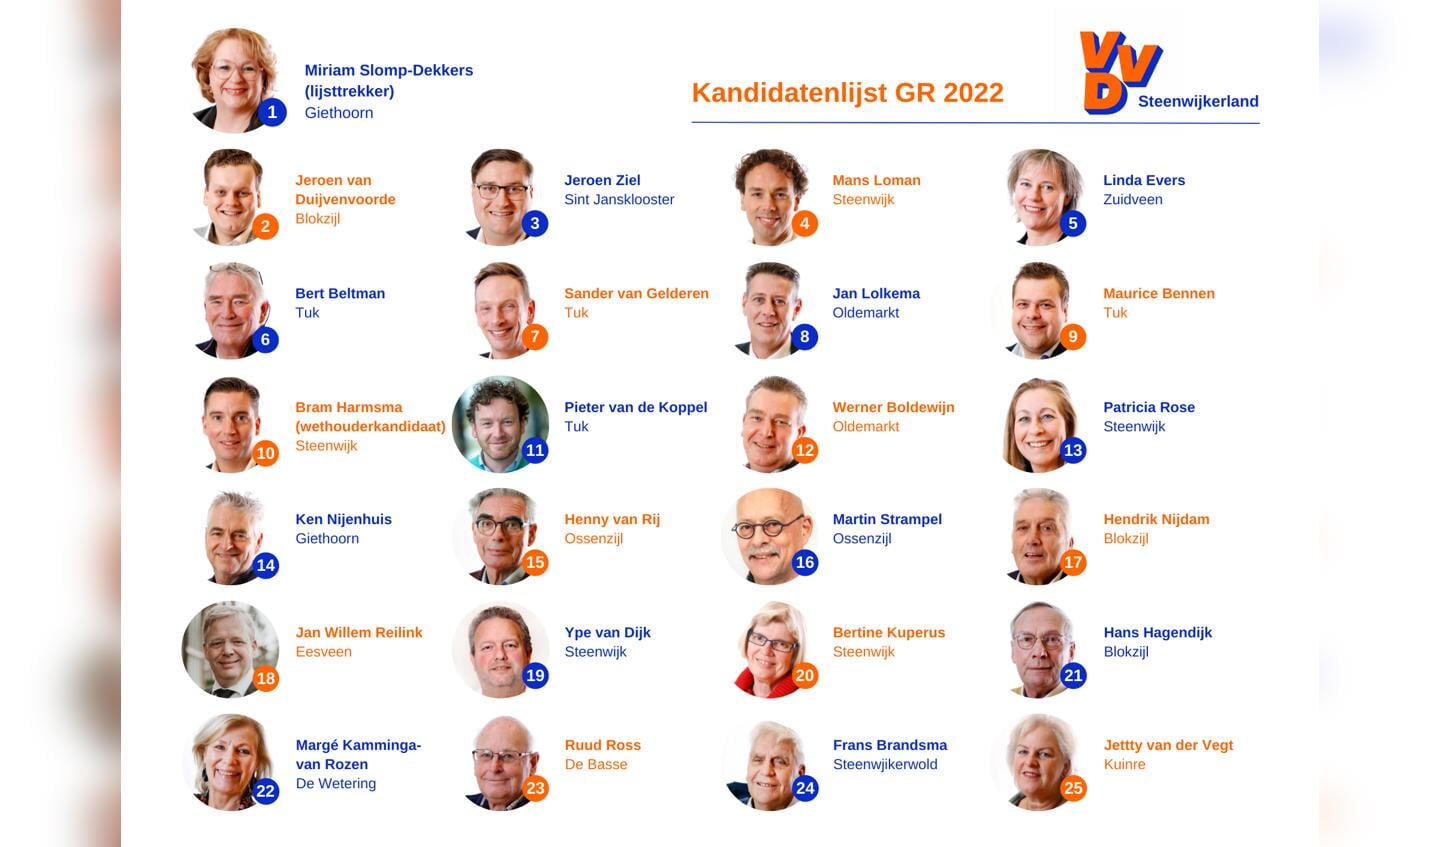 De complete kandidatenlijst van VVD Steenwijkerland